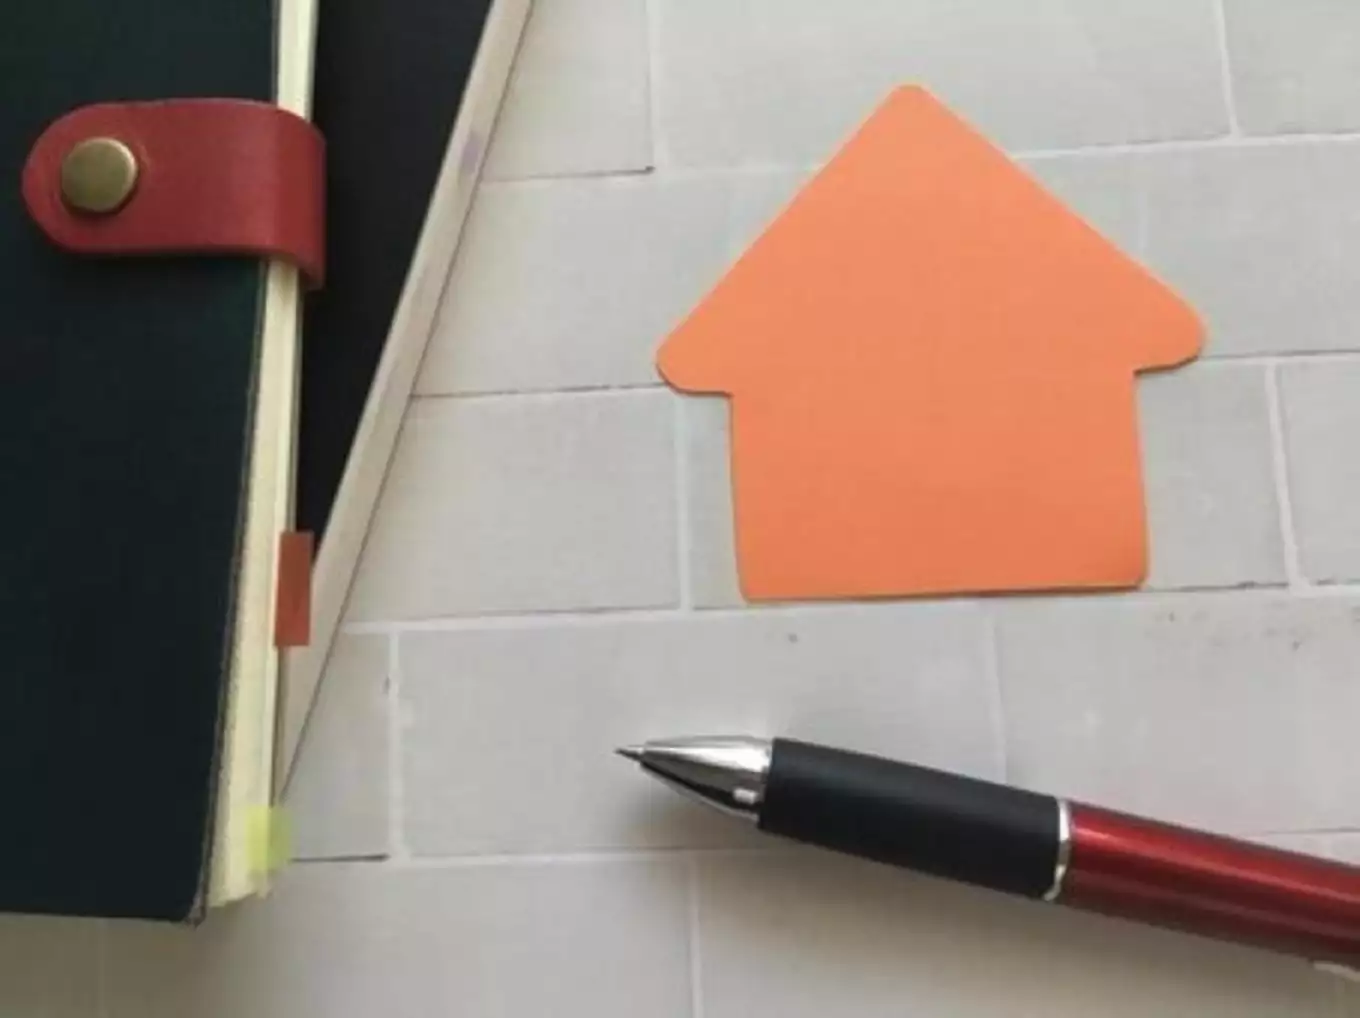 手帳とペンと家の形をしたオレンジ色の紙